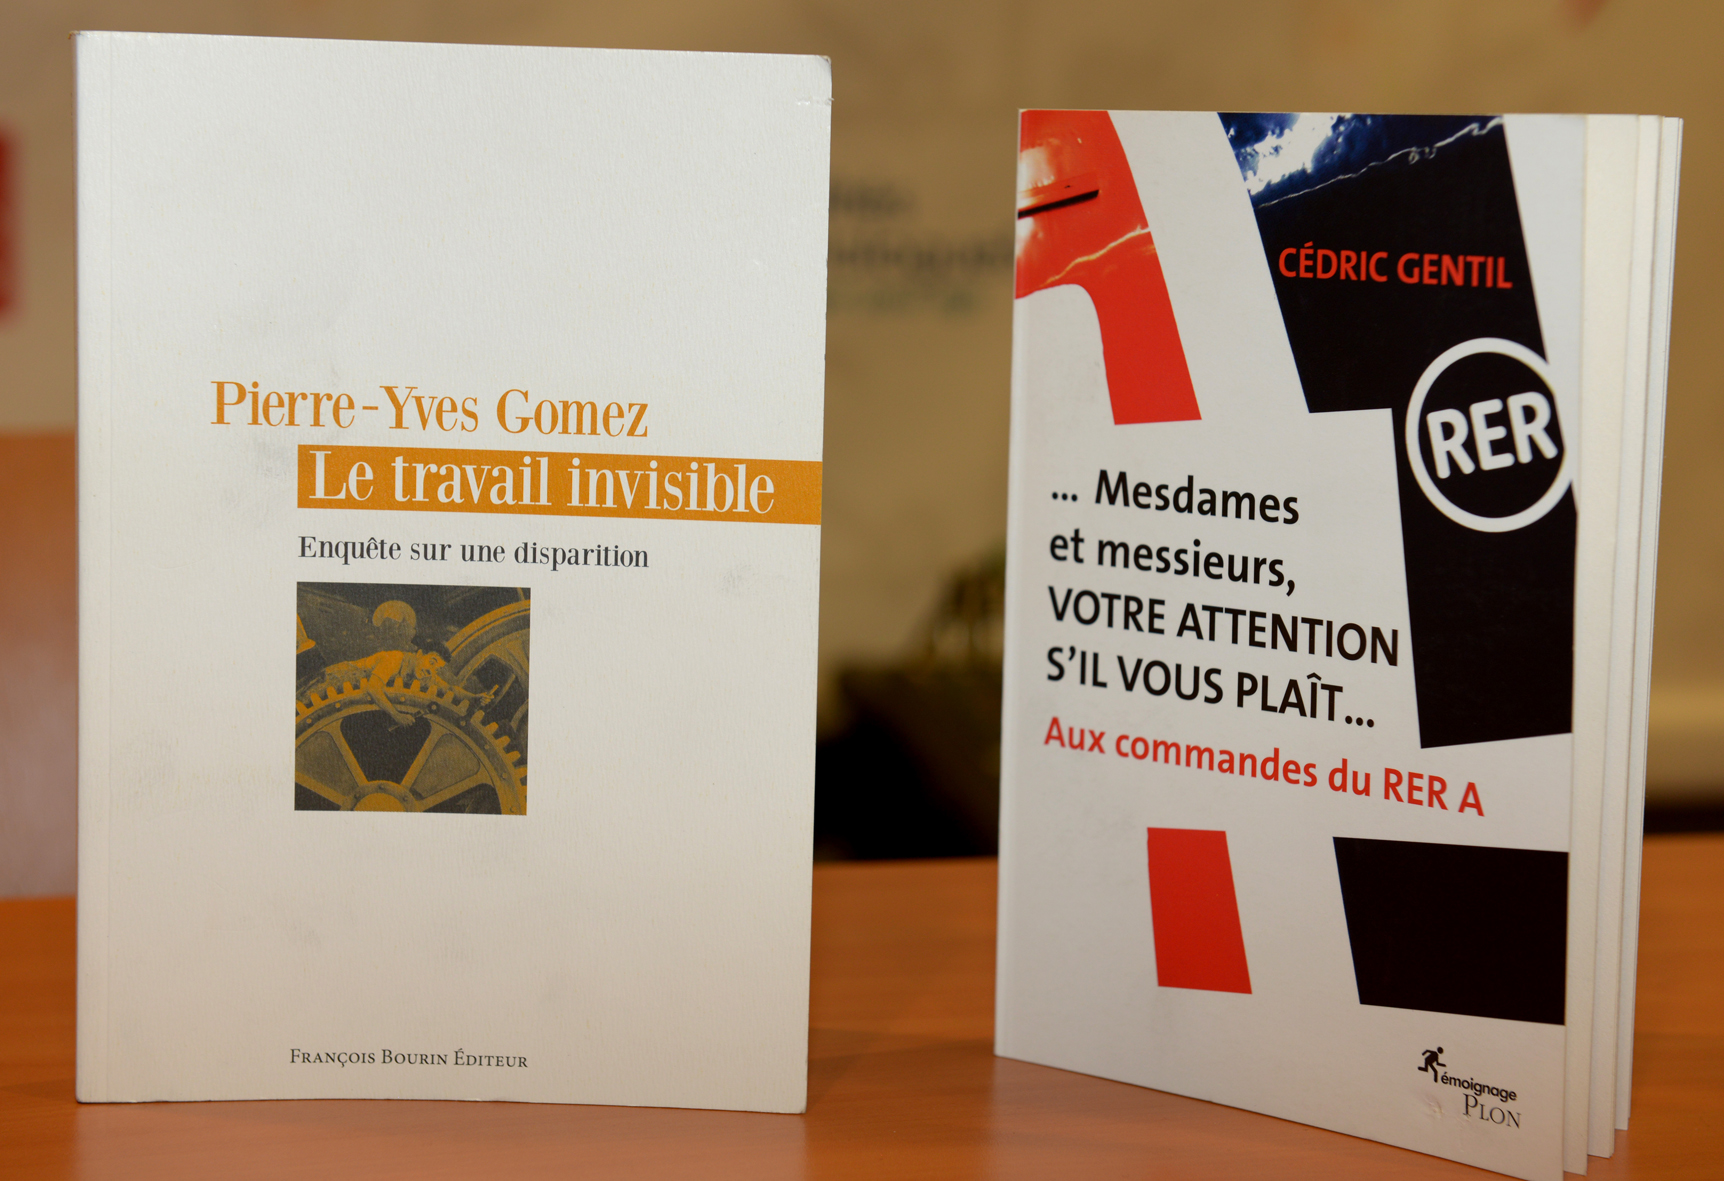 Cédric Gentil lauréat catégorie "salarié" et Pierre-Yves Gomez catégorie "expert". Photo : Patrice Lecourt